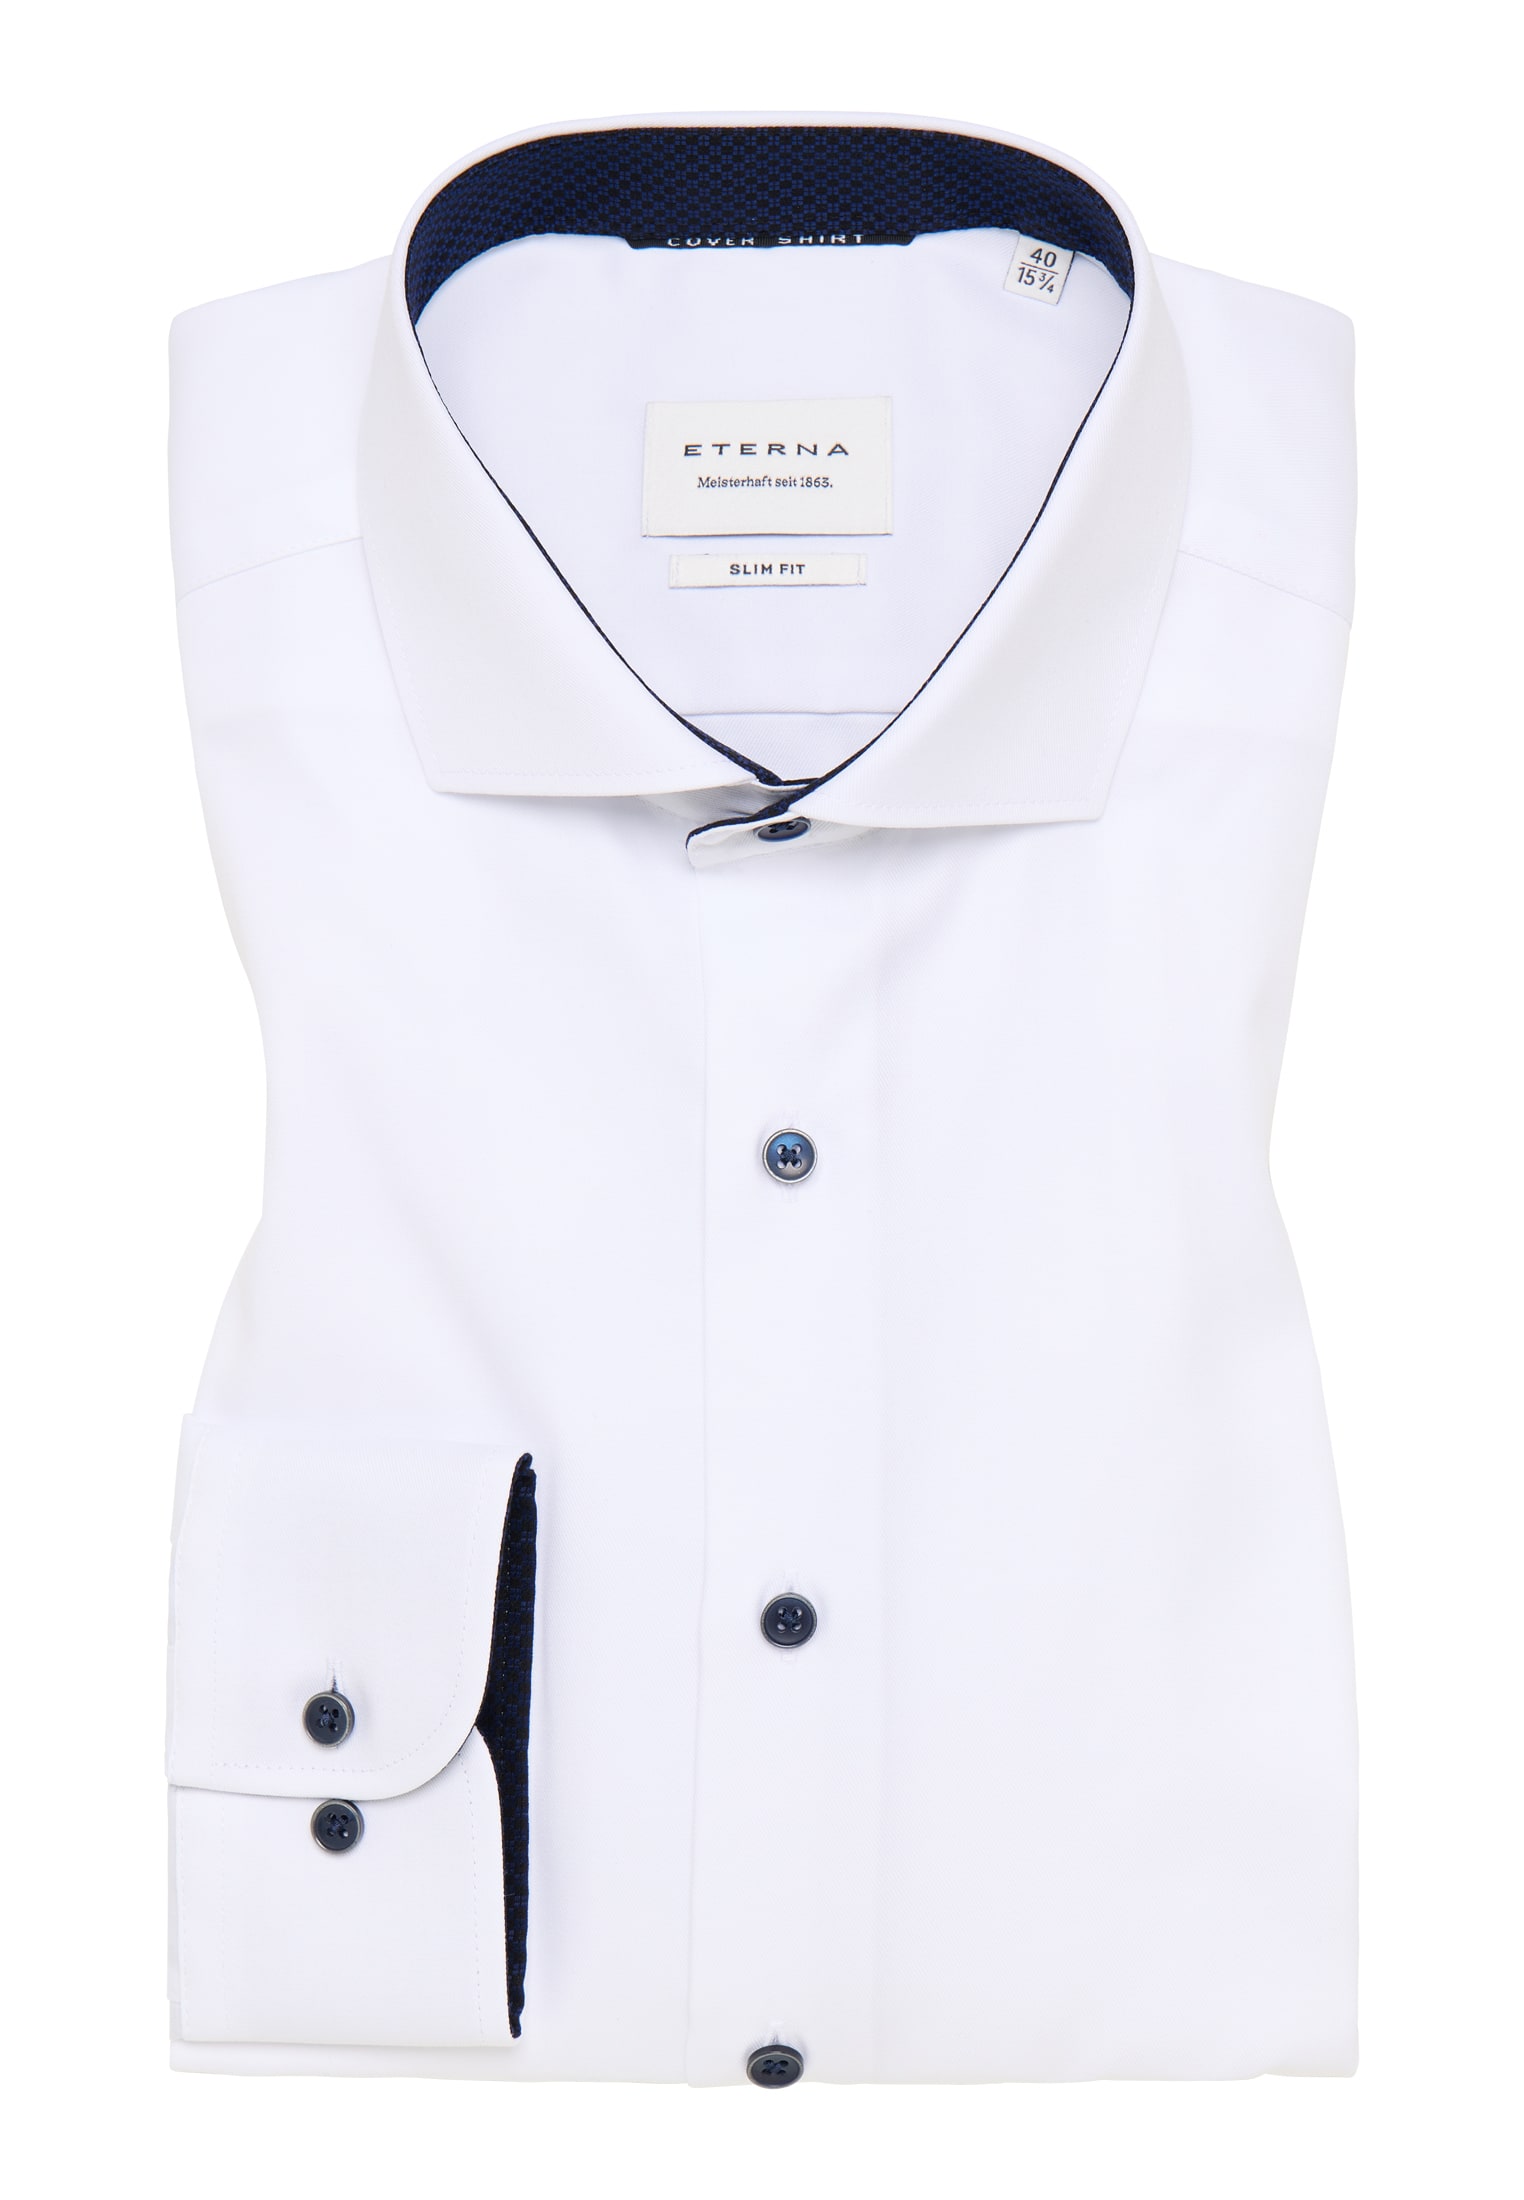 SLIM FIT Cover Shirt in | | unifarben | Langarm weiß | 1SH05553-00-01-41-1/1 41 weiß